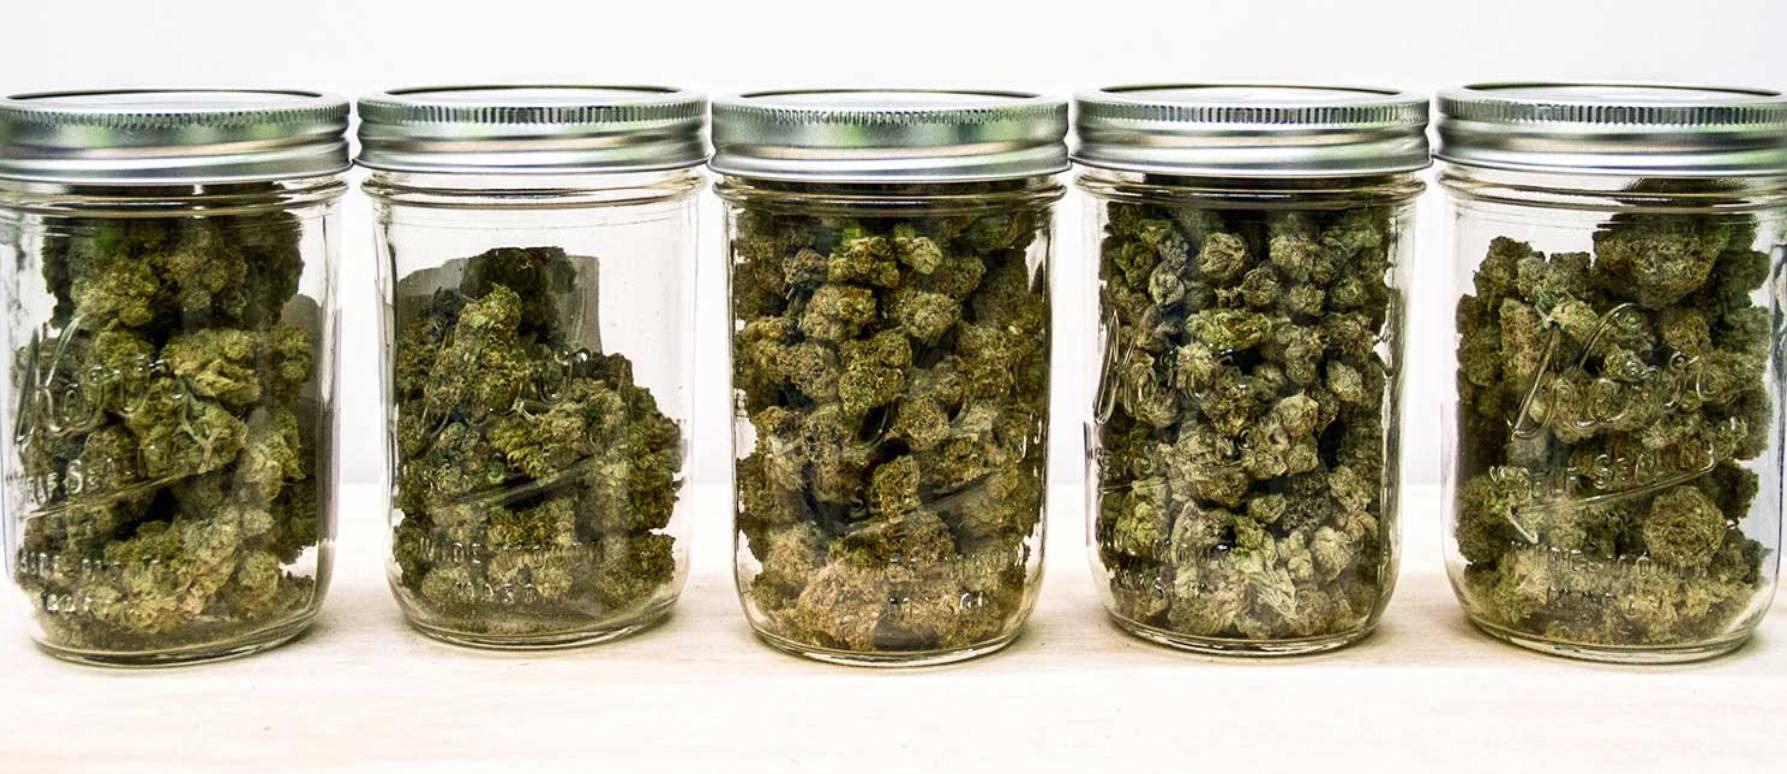 Cómo debes curar tu cosecha de marihuana